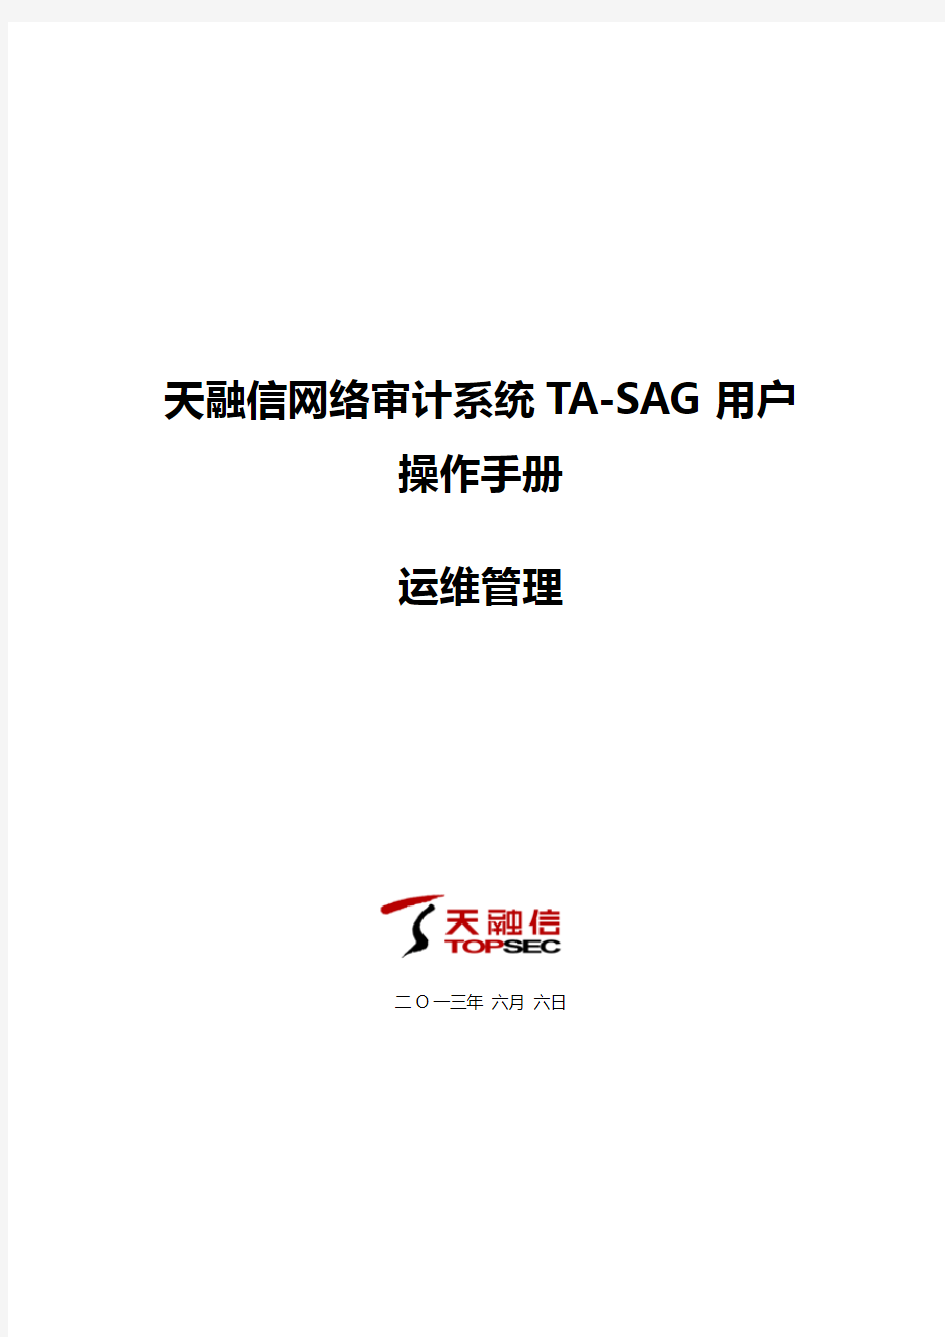 天融信堡垒主机(TA-SAG)用户操作手册--运维管理